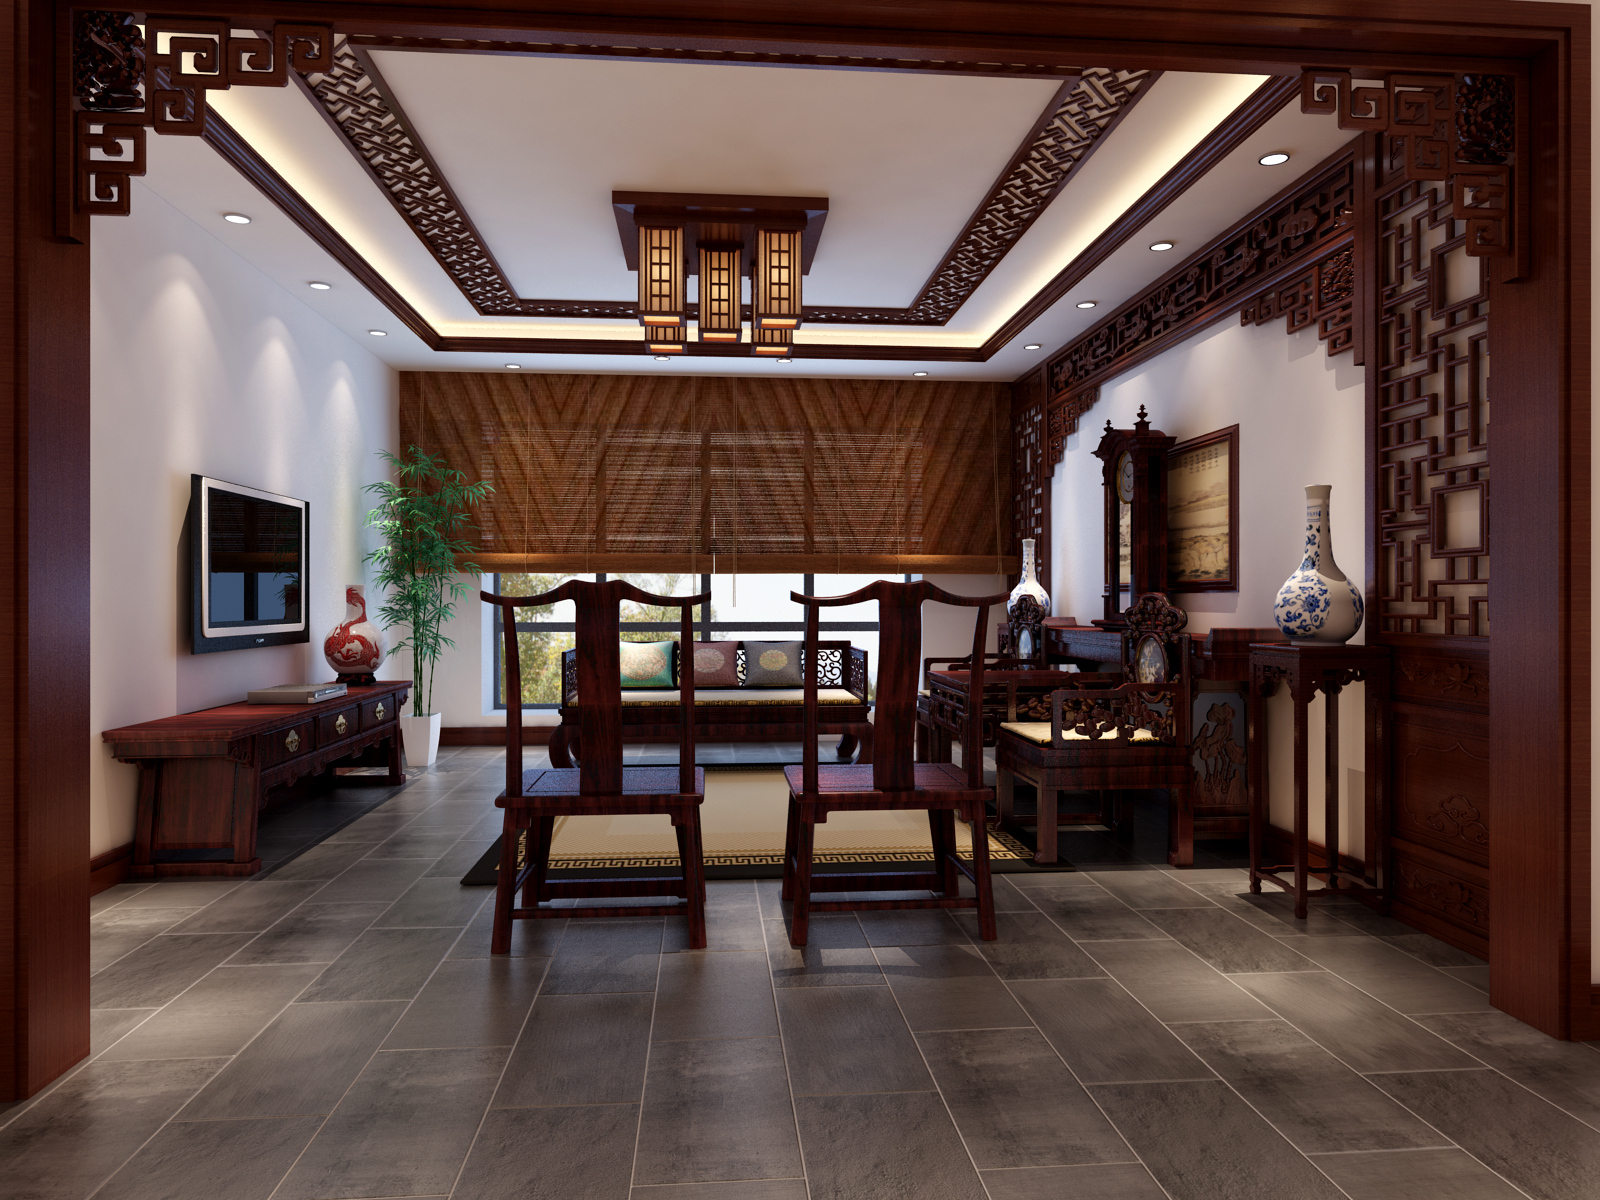 三居 中式 客厅 餐厅 休闲区 卧室 儿童房 客厅图片来自实创装饰晶晶在170平3居室中式纯在设计的分享